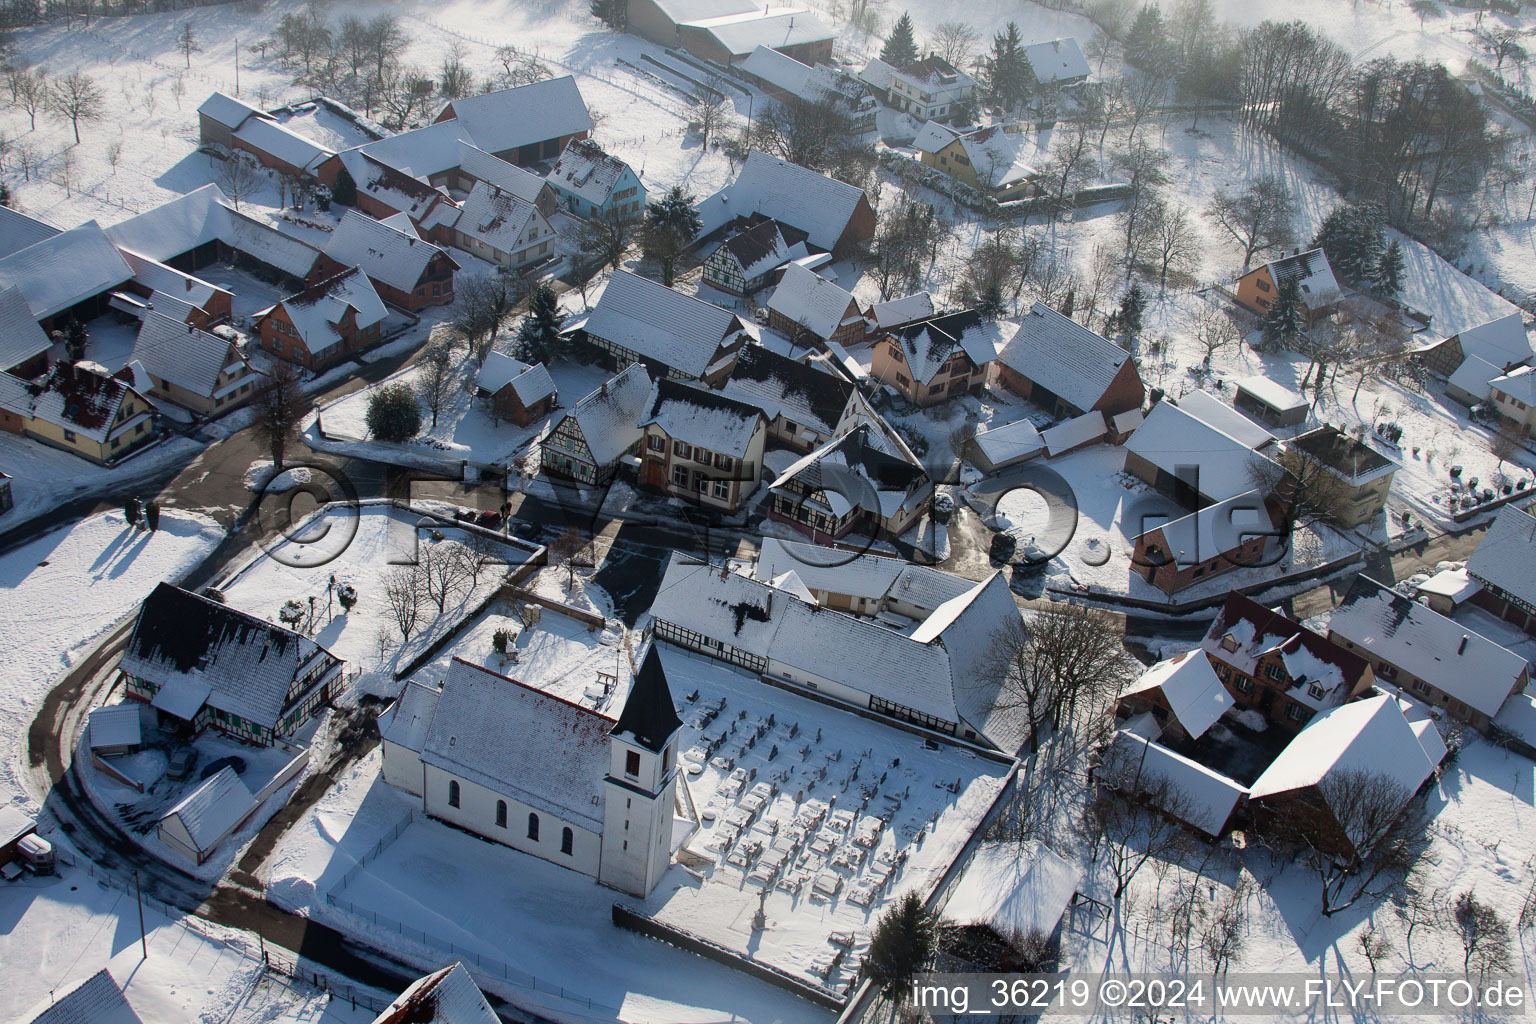 Photographie aérienne de Bâtiments d'église enneigés en hiver au centre du village à Eberbach-Seltz dans le département Bas Rhin, France